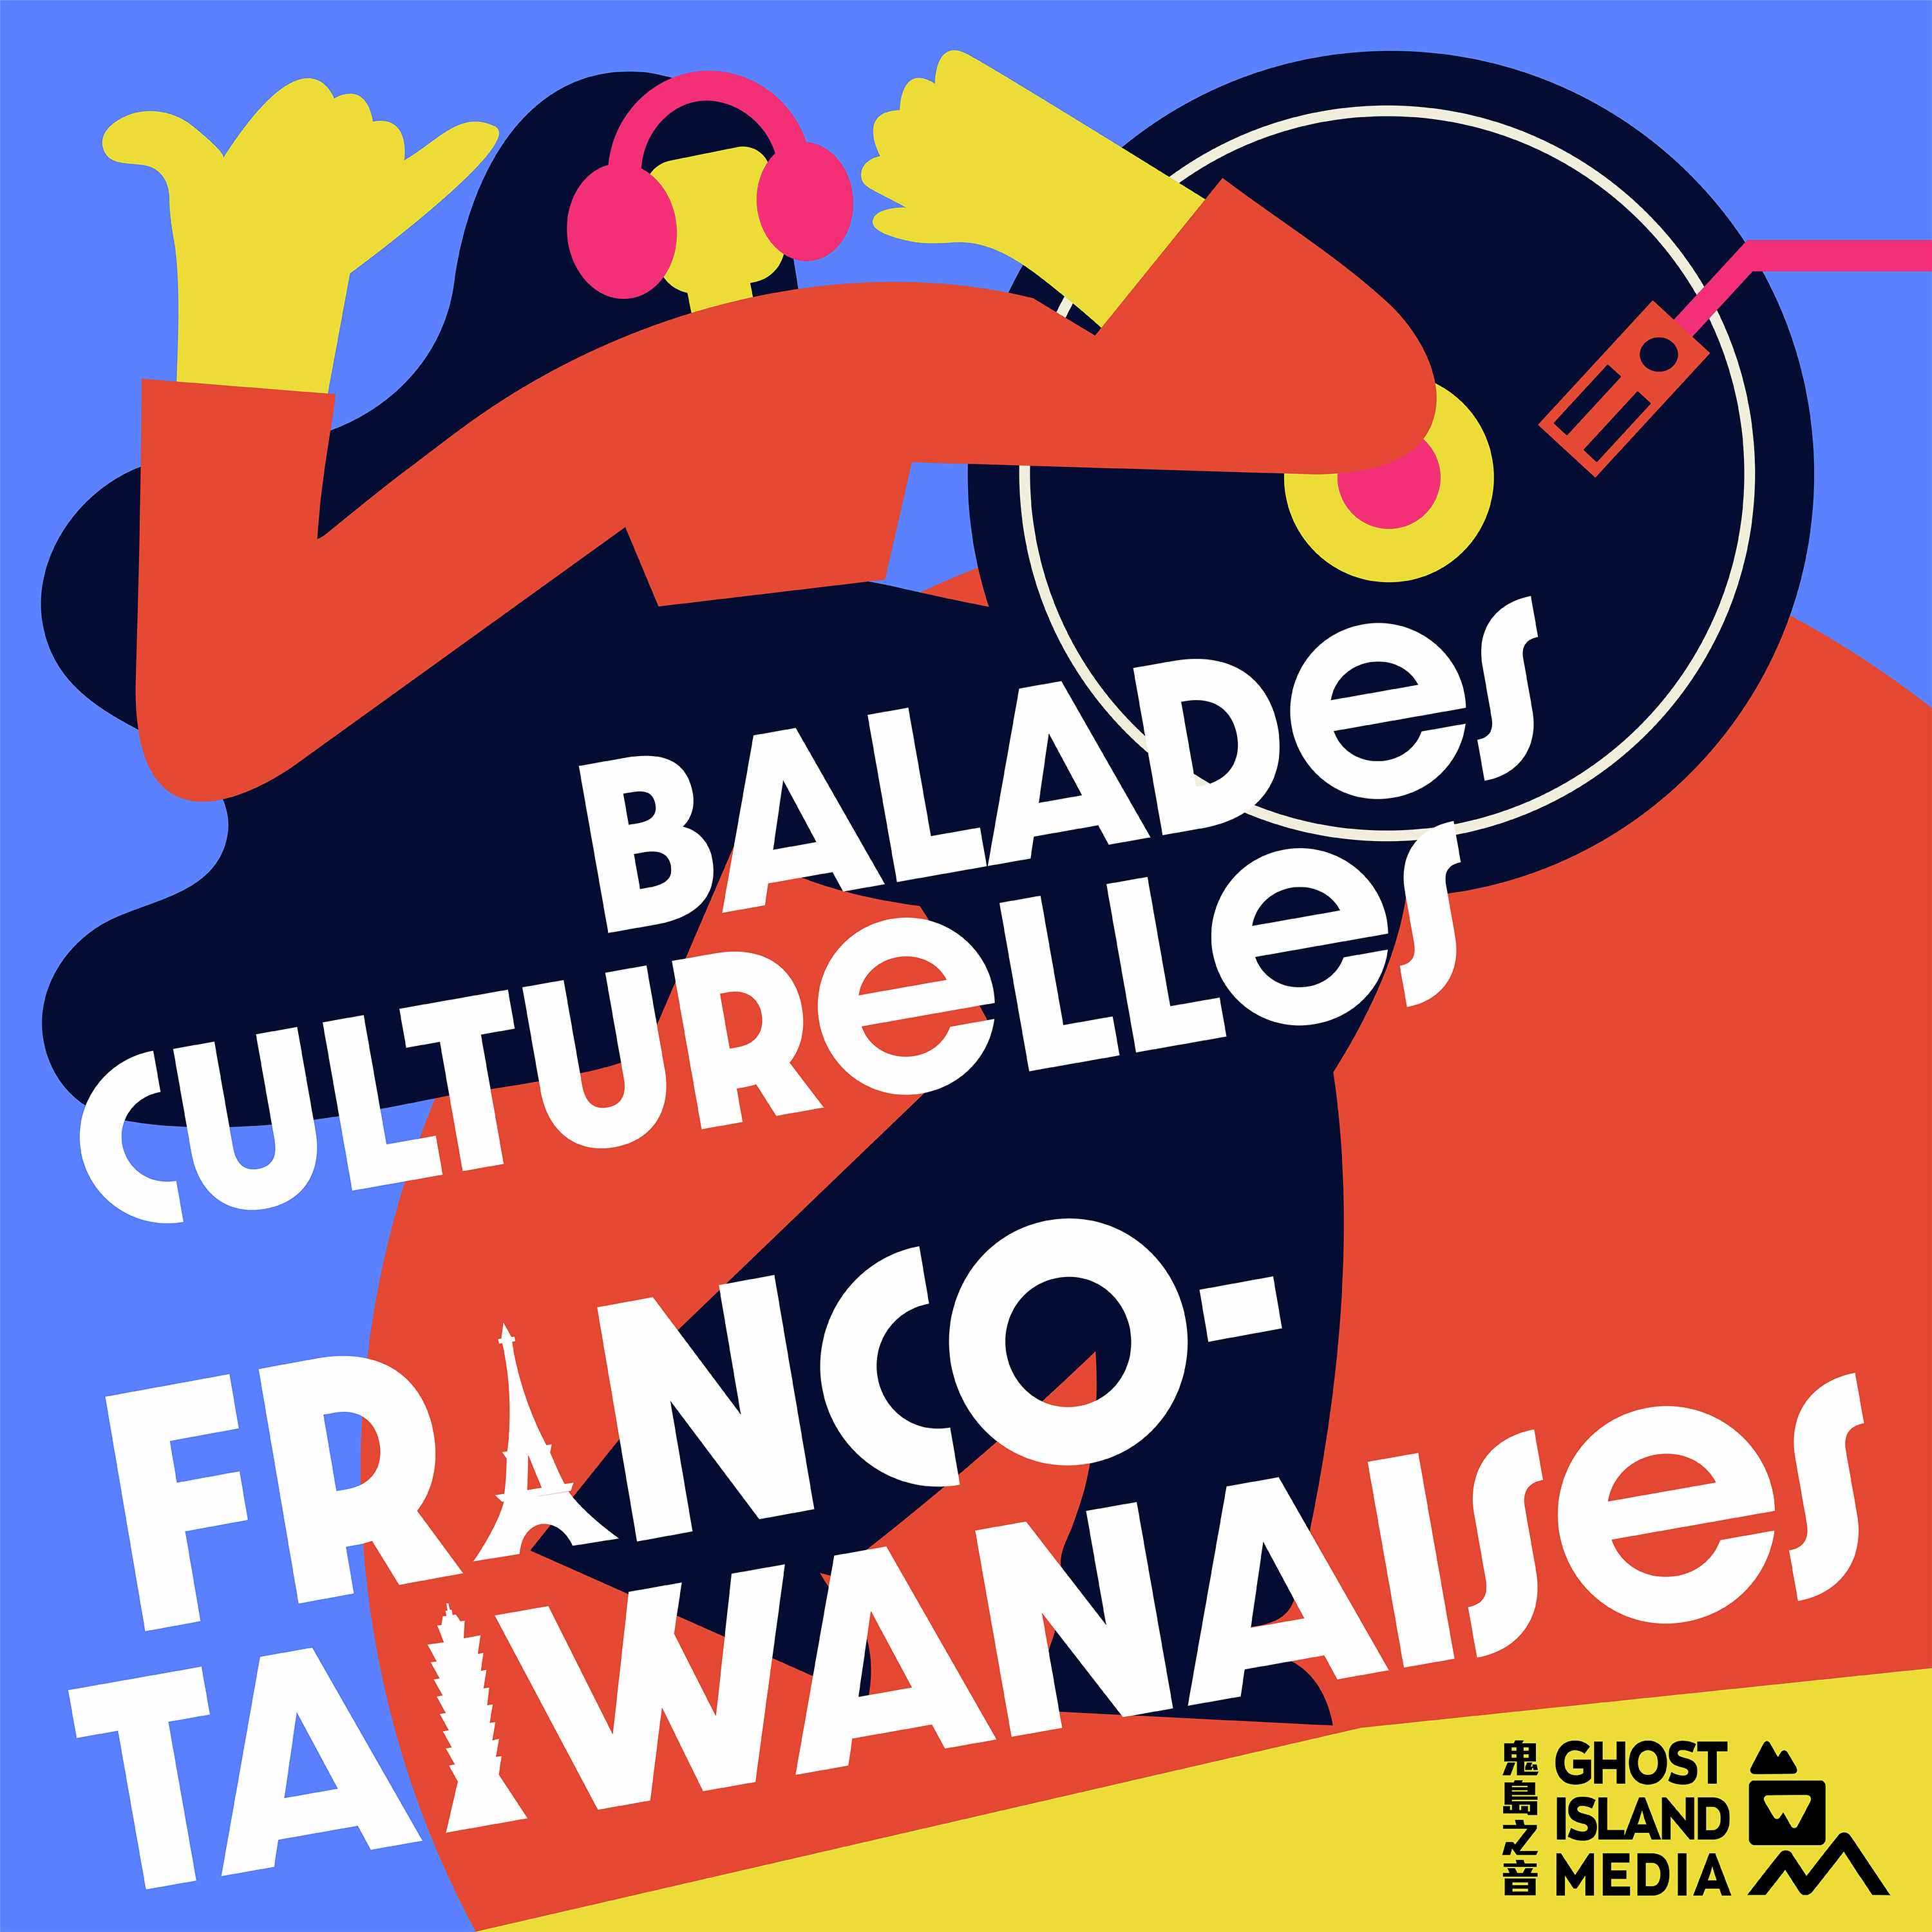 Balades Culturelles Franco-Taïwanaises 法台漫遊